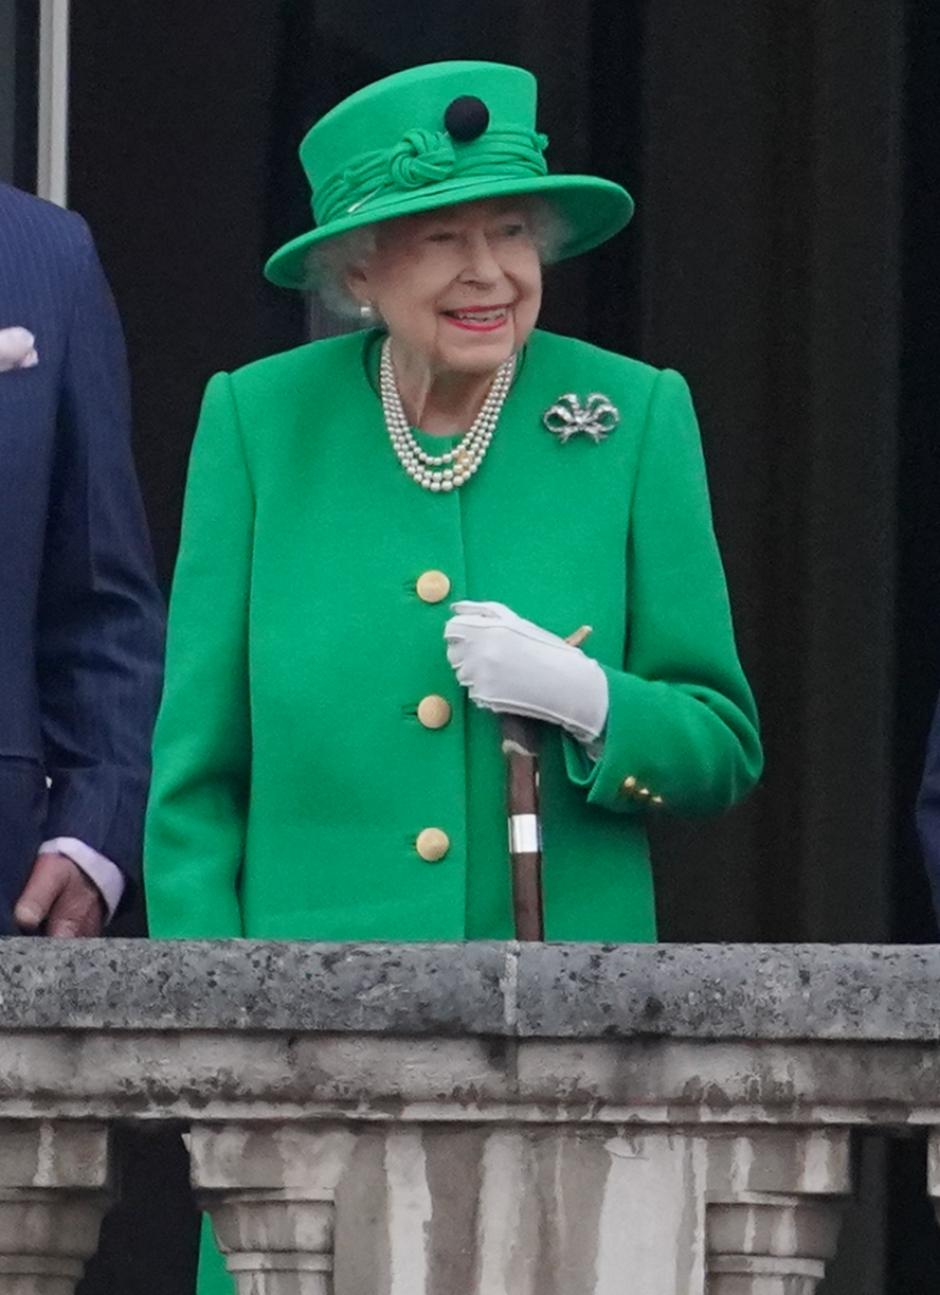 Reina Isabel II: 70 años, 126 días 

Su Majestad se convirtió en Quen envejecida el 6 de febrero de 1952. Originalmente, Isabel no estaba destinada a convertirse en Reina. Sin embargo, se convirtió en la presunta heredera después de que su padre, el rey Jorge VI, ascendiera al trono tras la abdicación de su hermano mayor, el rey Eduardo VIII.